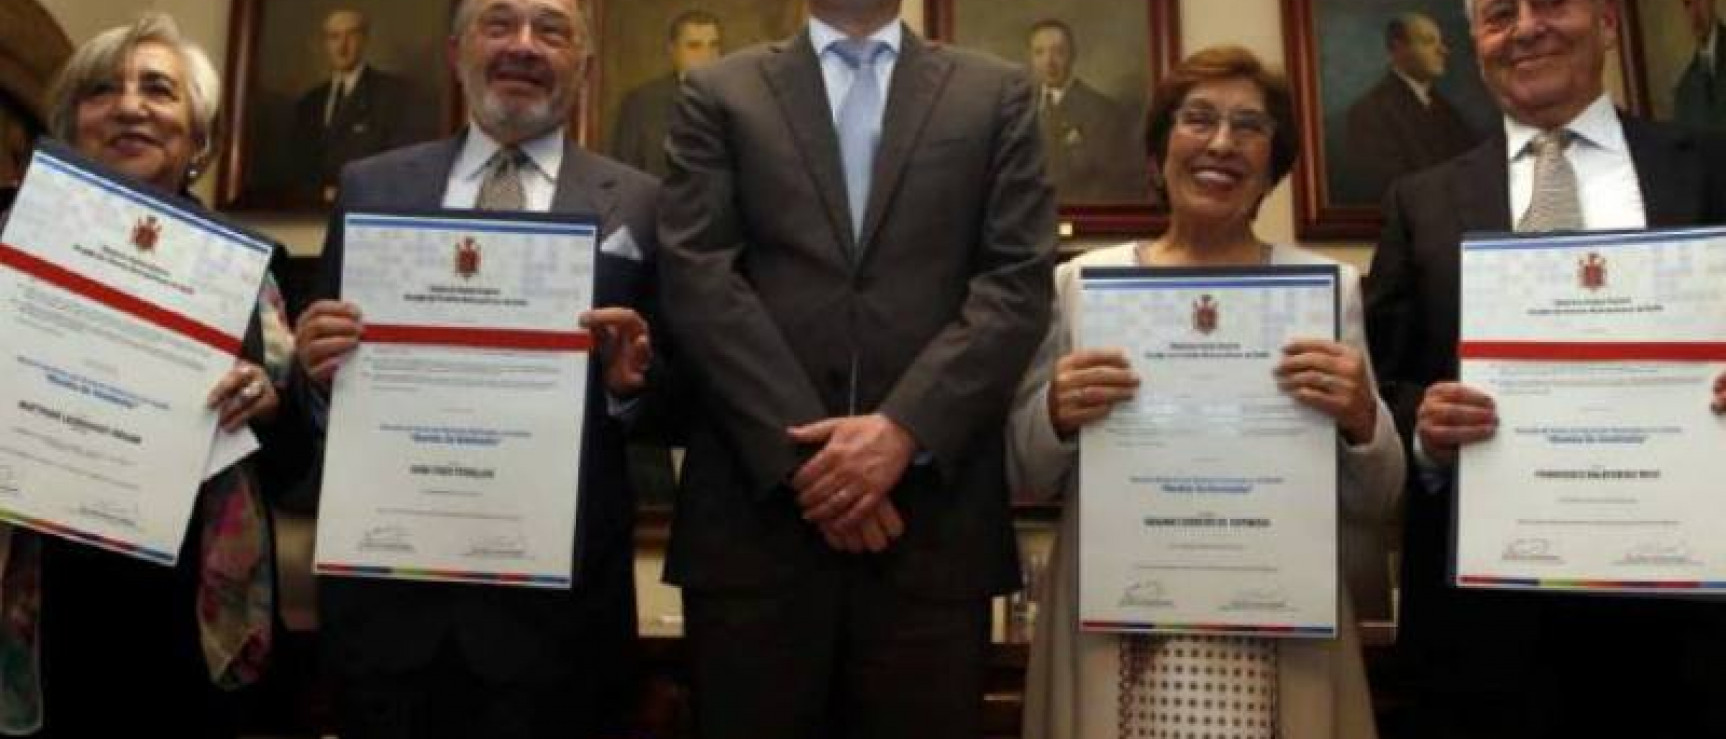  Susana Cordero, con el alcalde y los demás premiados. Foto: El Universo.